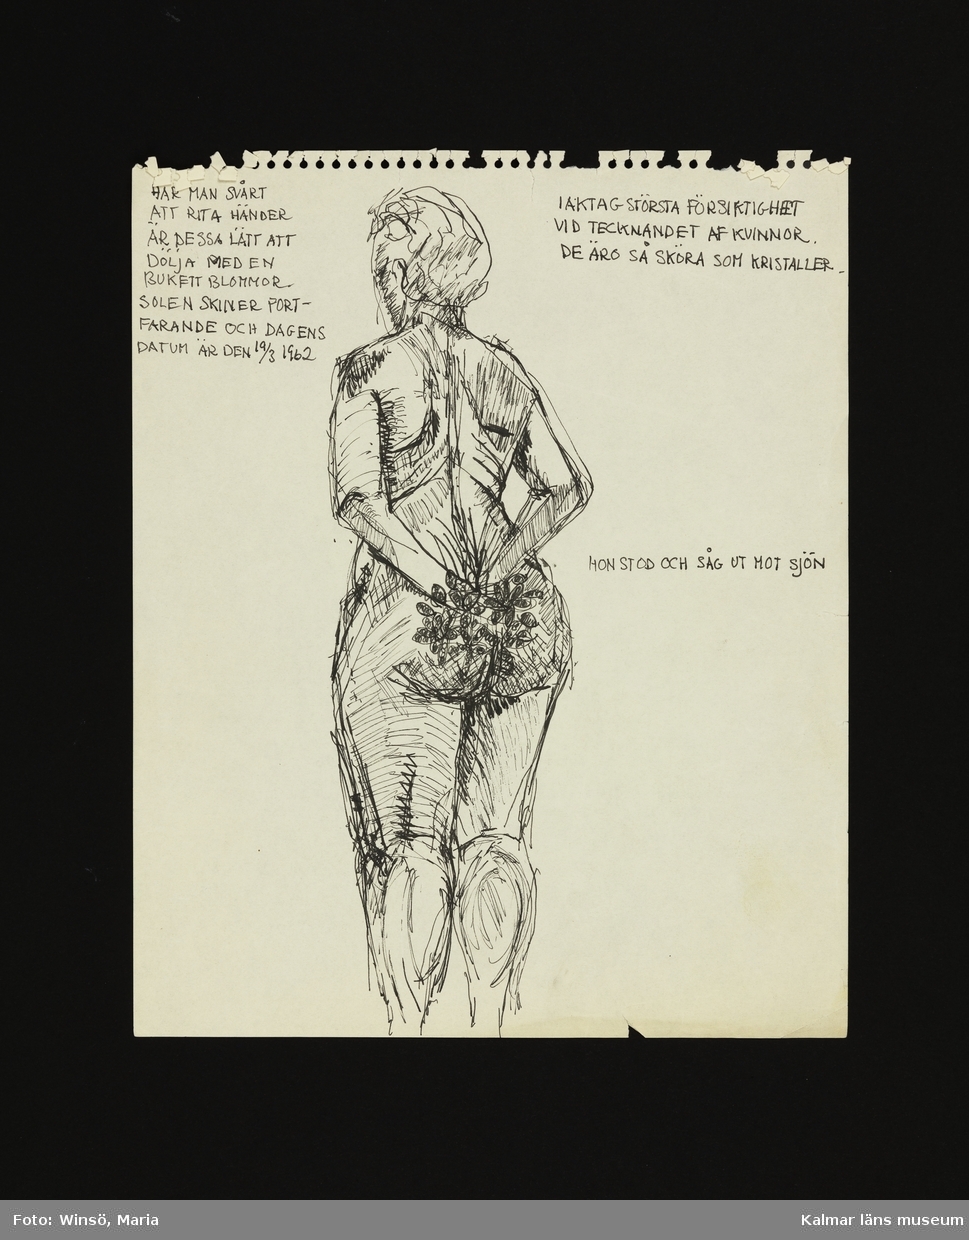 Krokiteckning av en naken kvinna tecknad bakifrån, hållandes en bukett blommor. Text skriven av Raine Navin.